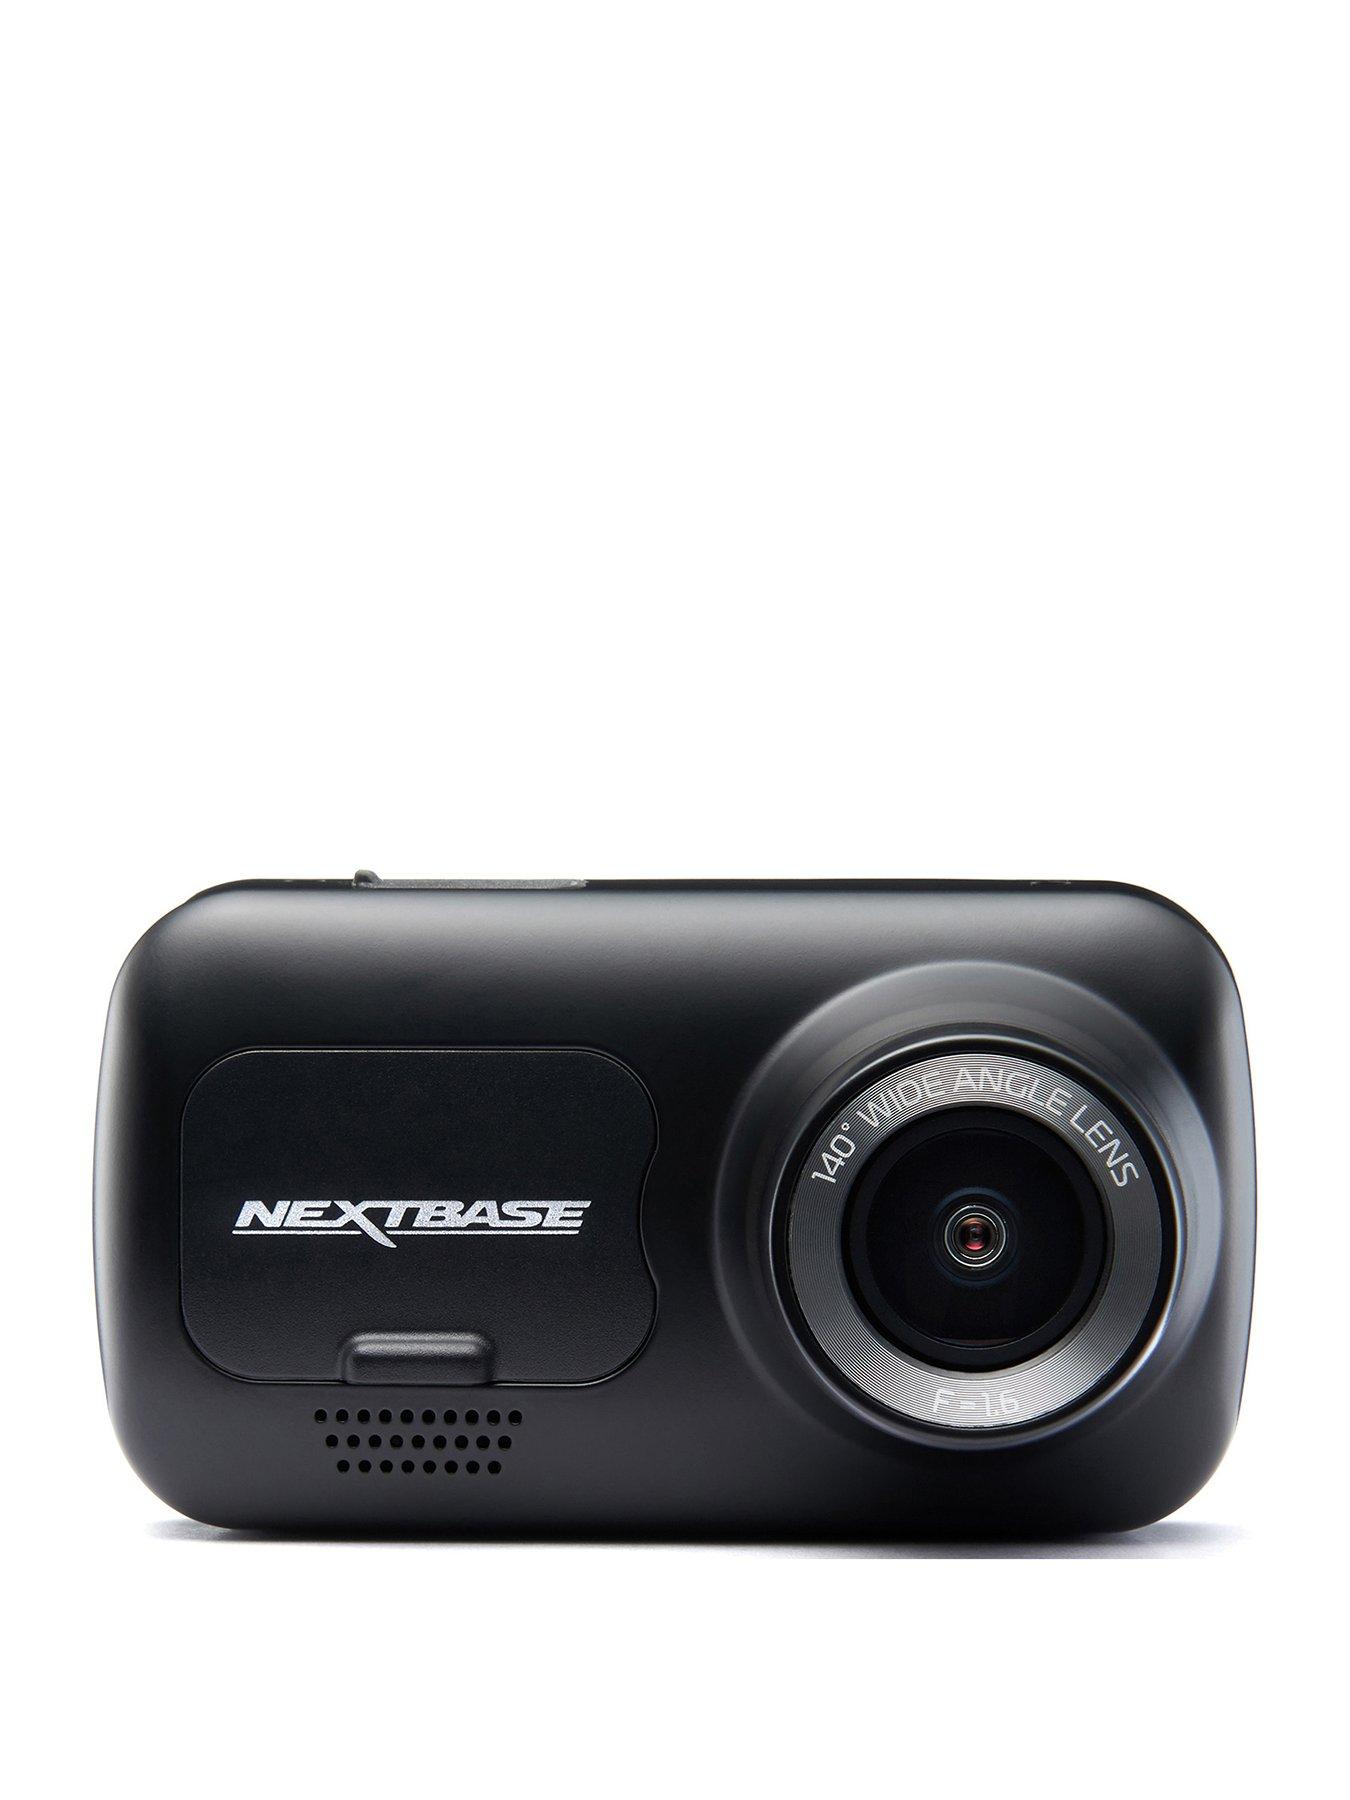 Nextbase, Dash cams, Sat navs, dash cams & in car entertainment, Electricals